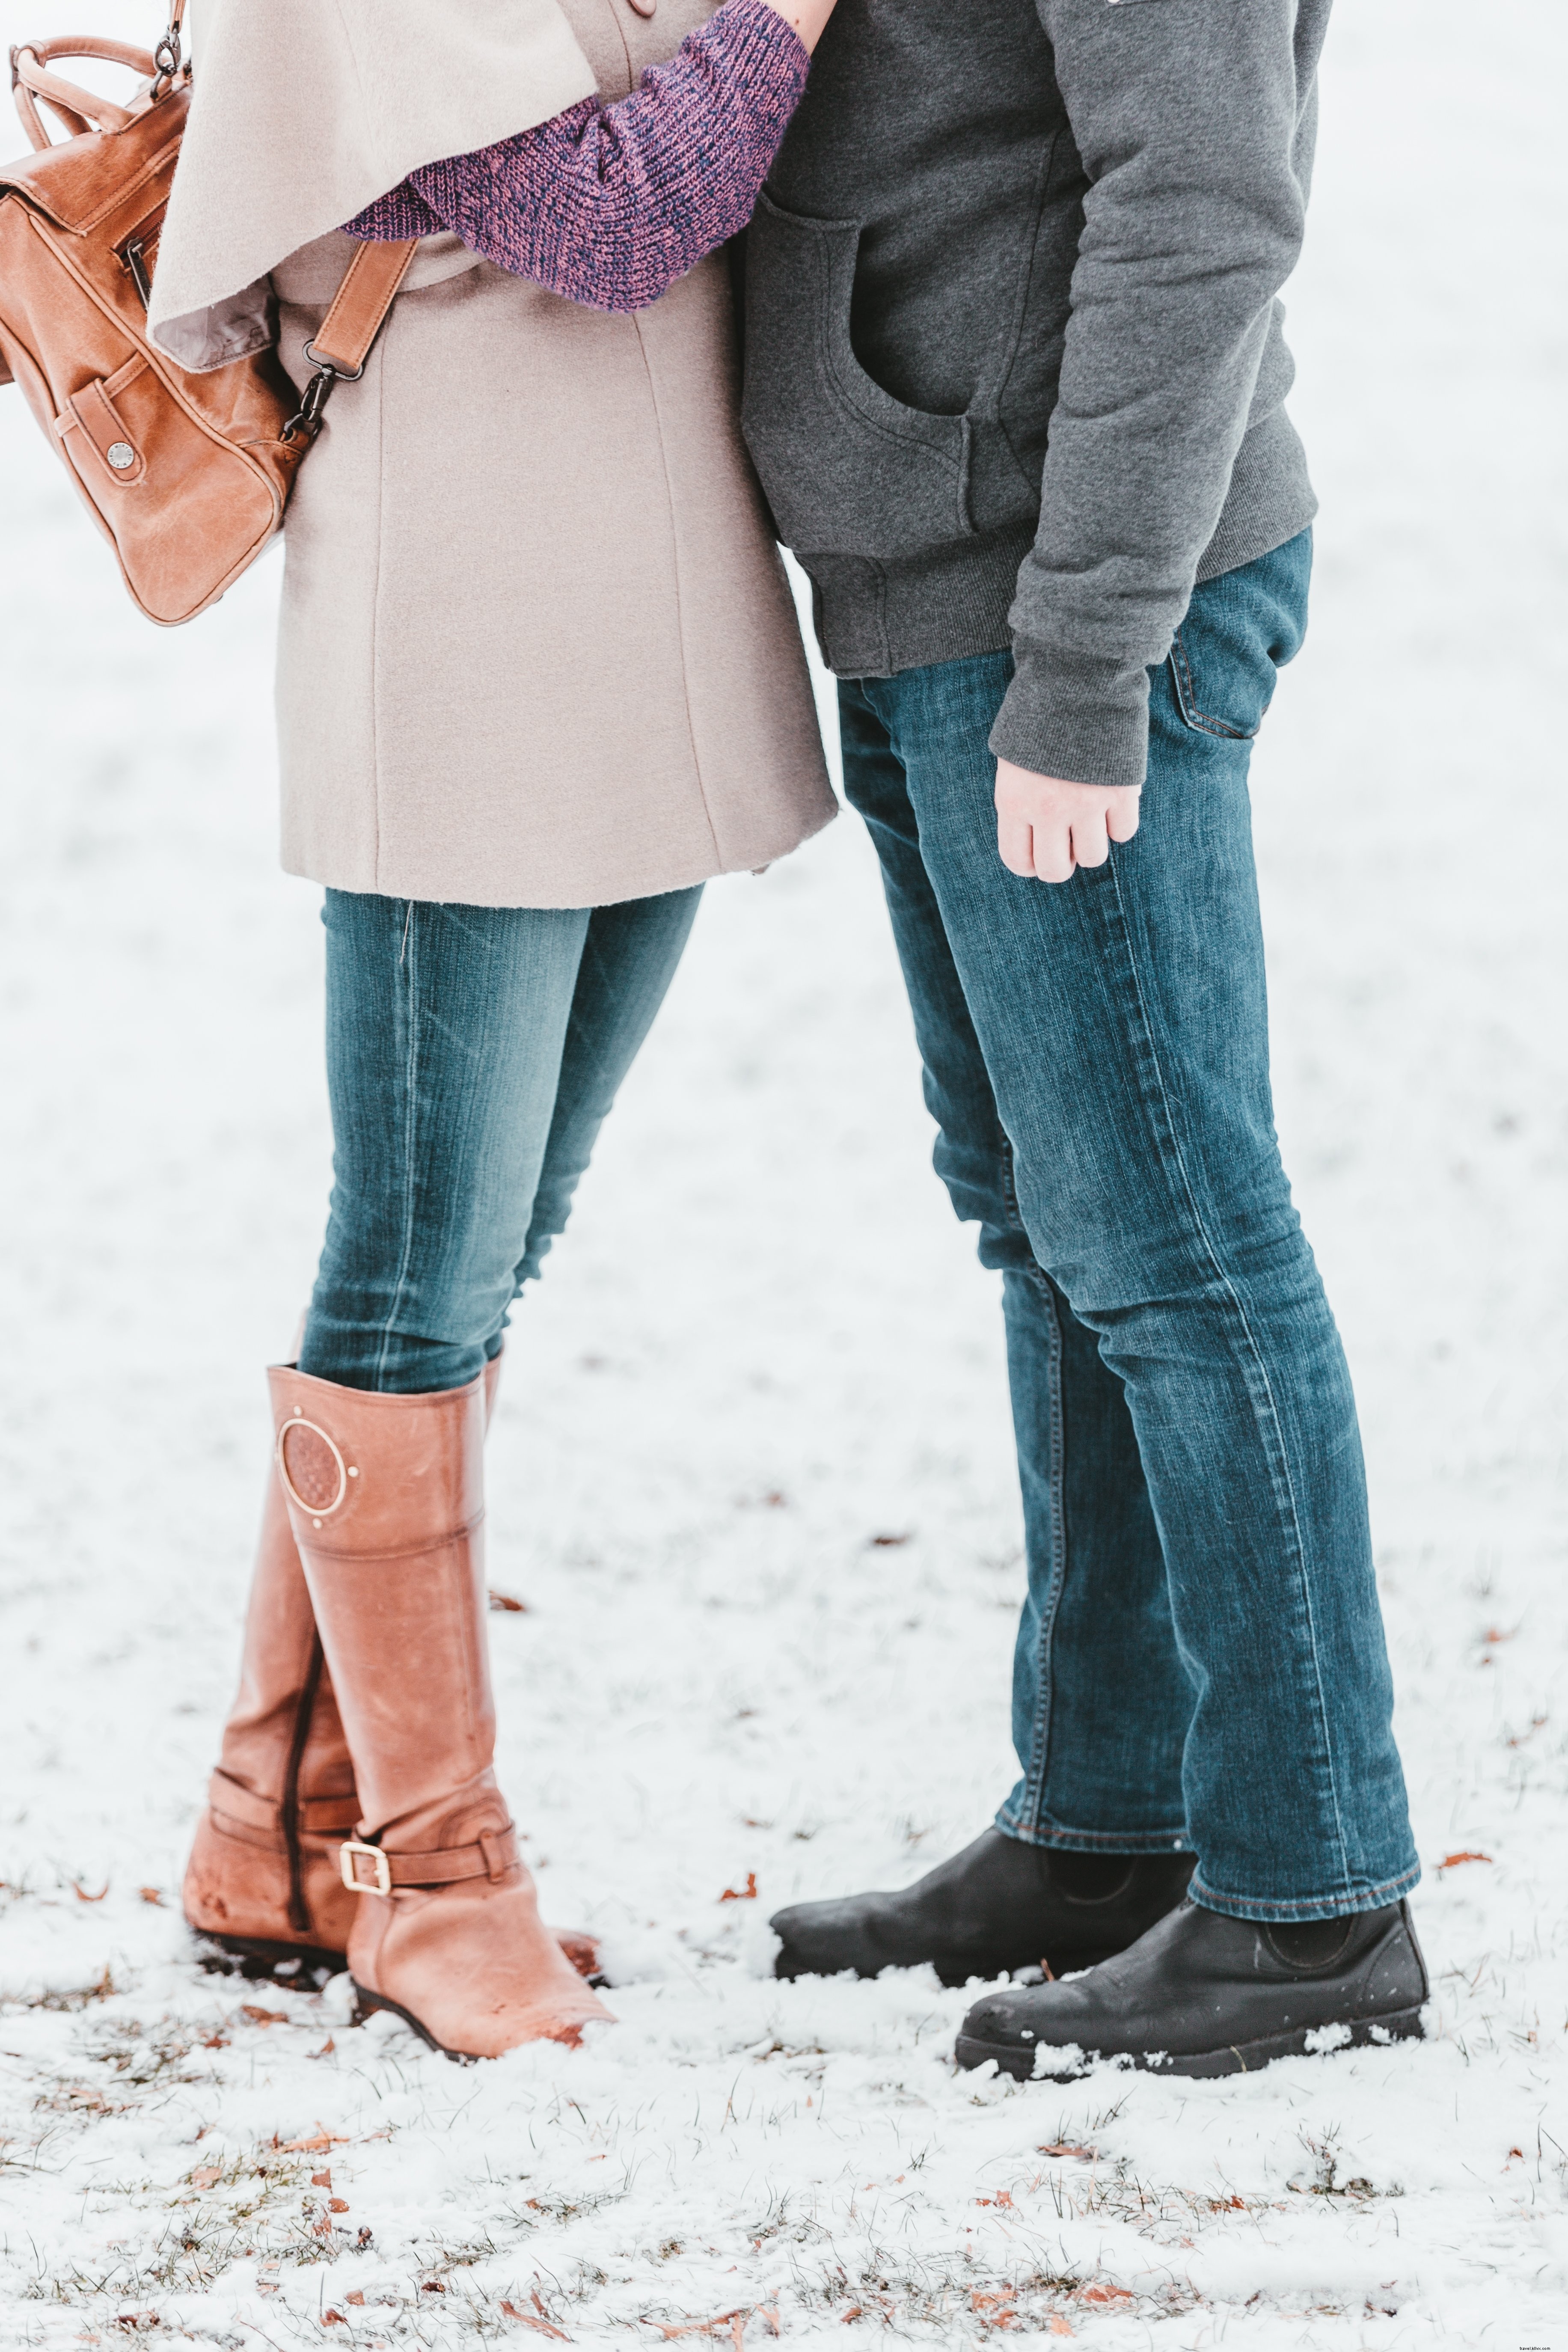 Un couple vole une étreinte chaleureuse en photo d hiver